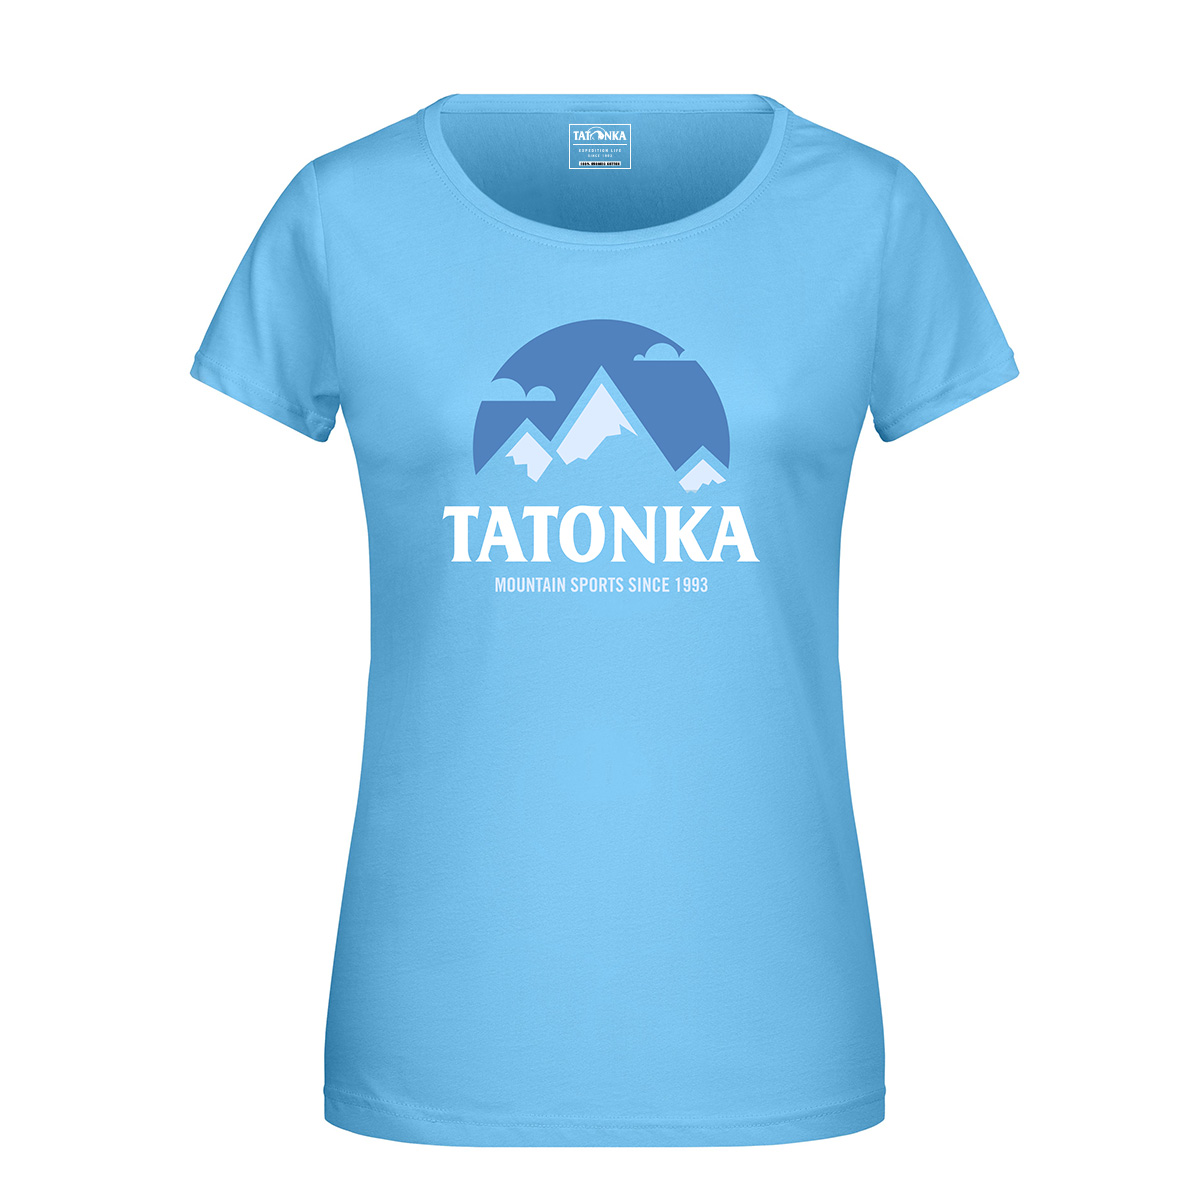 Tatonka Mountain T-Shirt Women sky blue blau T-Shirts 4013236375664